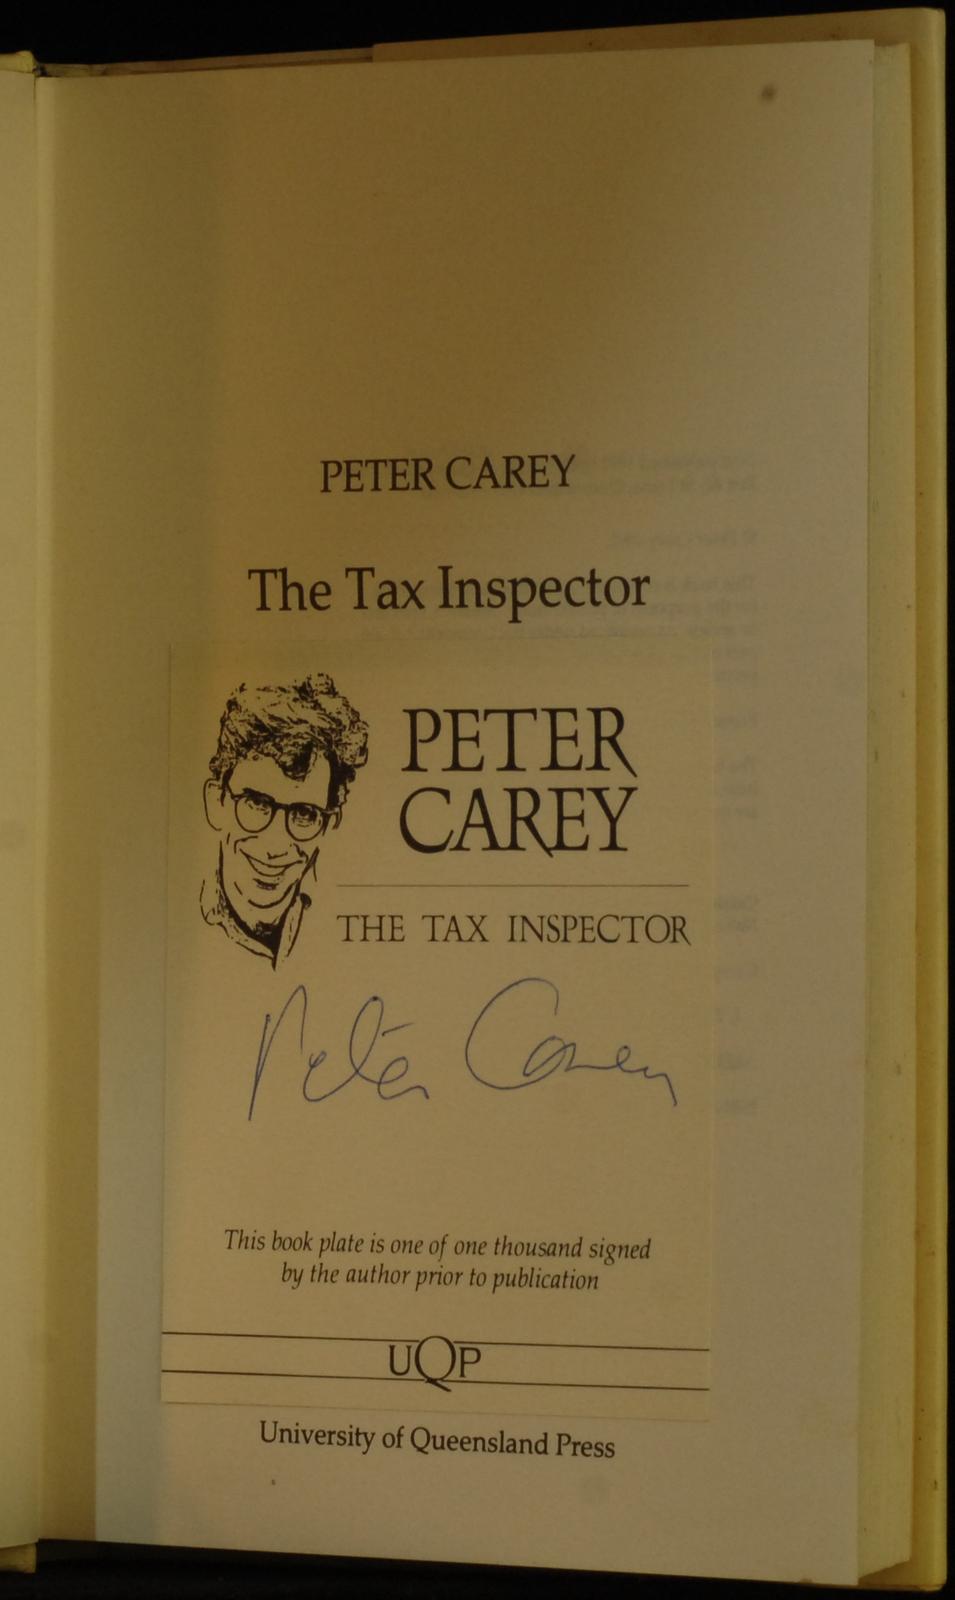 mbb006847d_-_Carey_Peter_-_The_Tax_Inspector.jpg